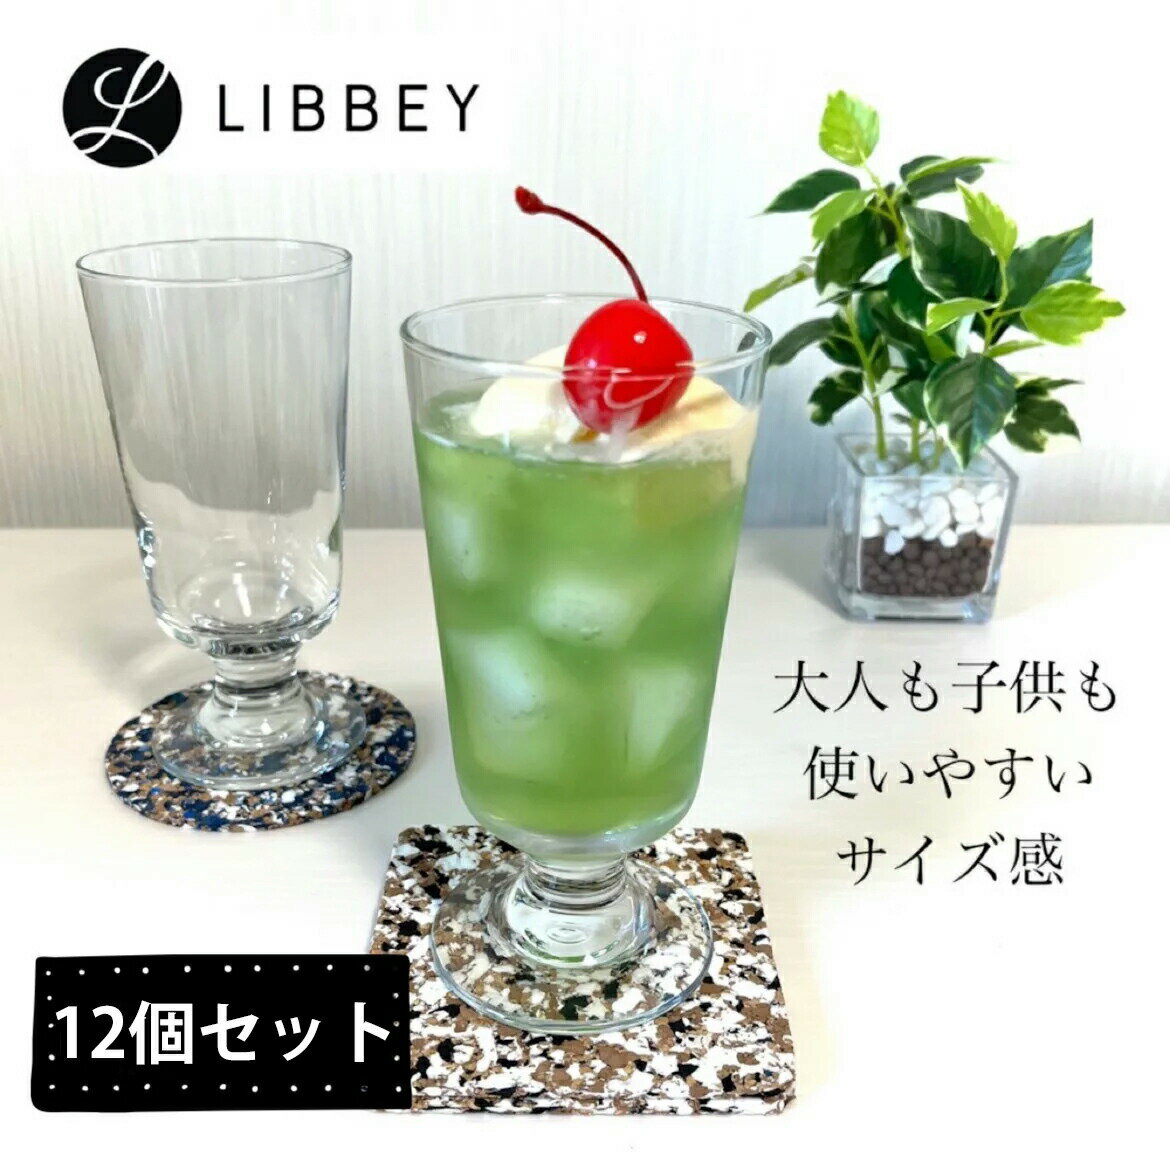 Libbey リビー エンバシー 3737 フッティッド 296ml 12個セット /クリームソーダ 台付きグラス フロート アイスコーヒー メロンソーダ 炭酸 パフェグラス ビールグラス おしゃれ ガラス コップ